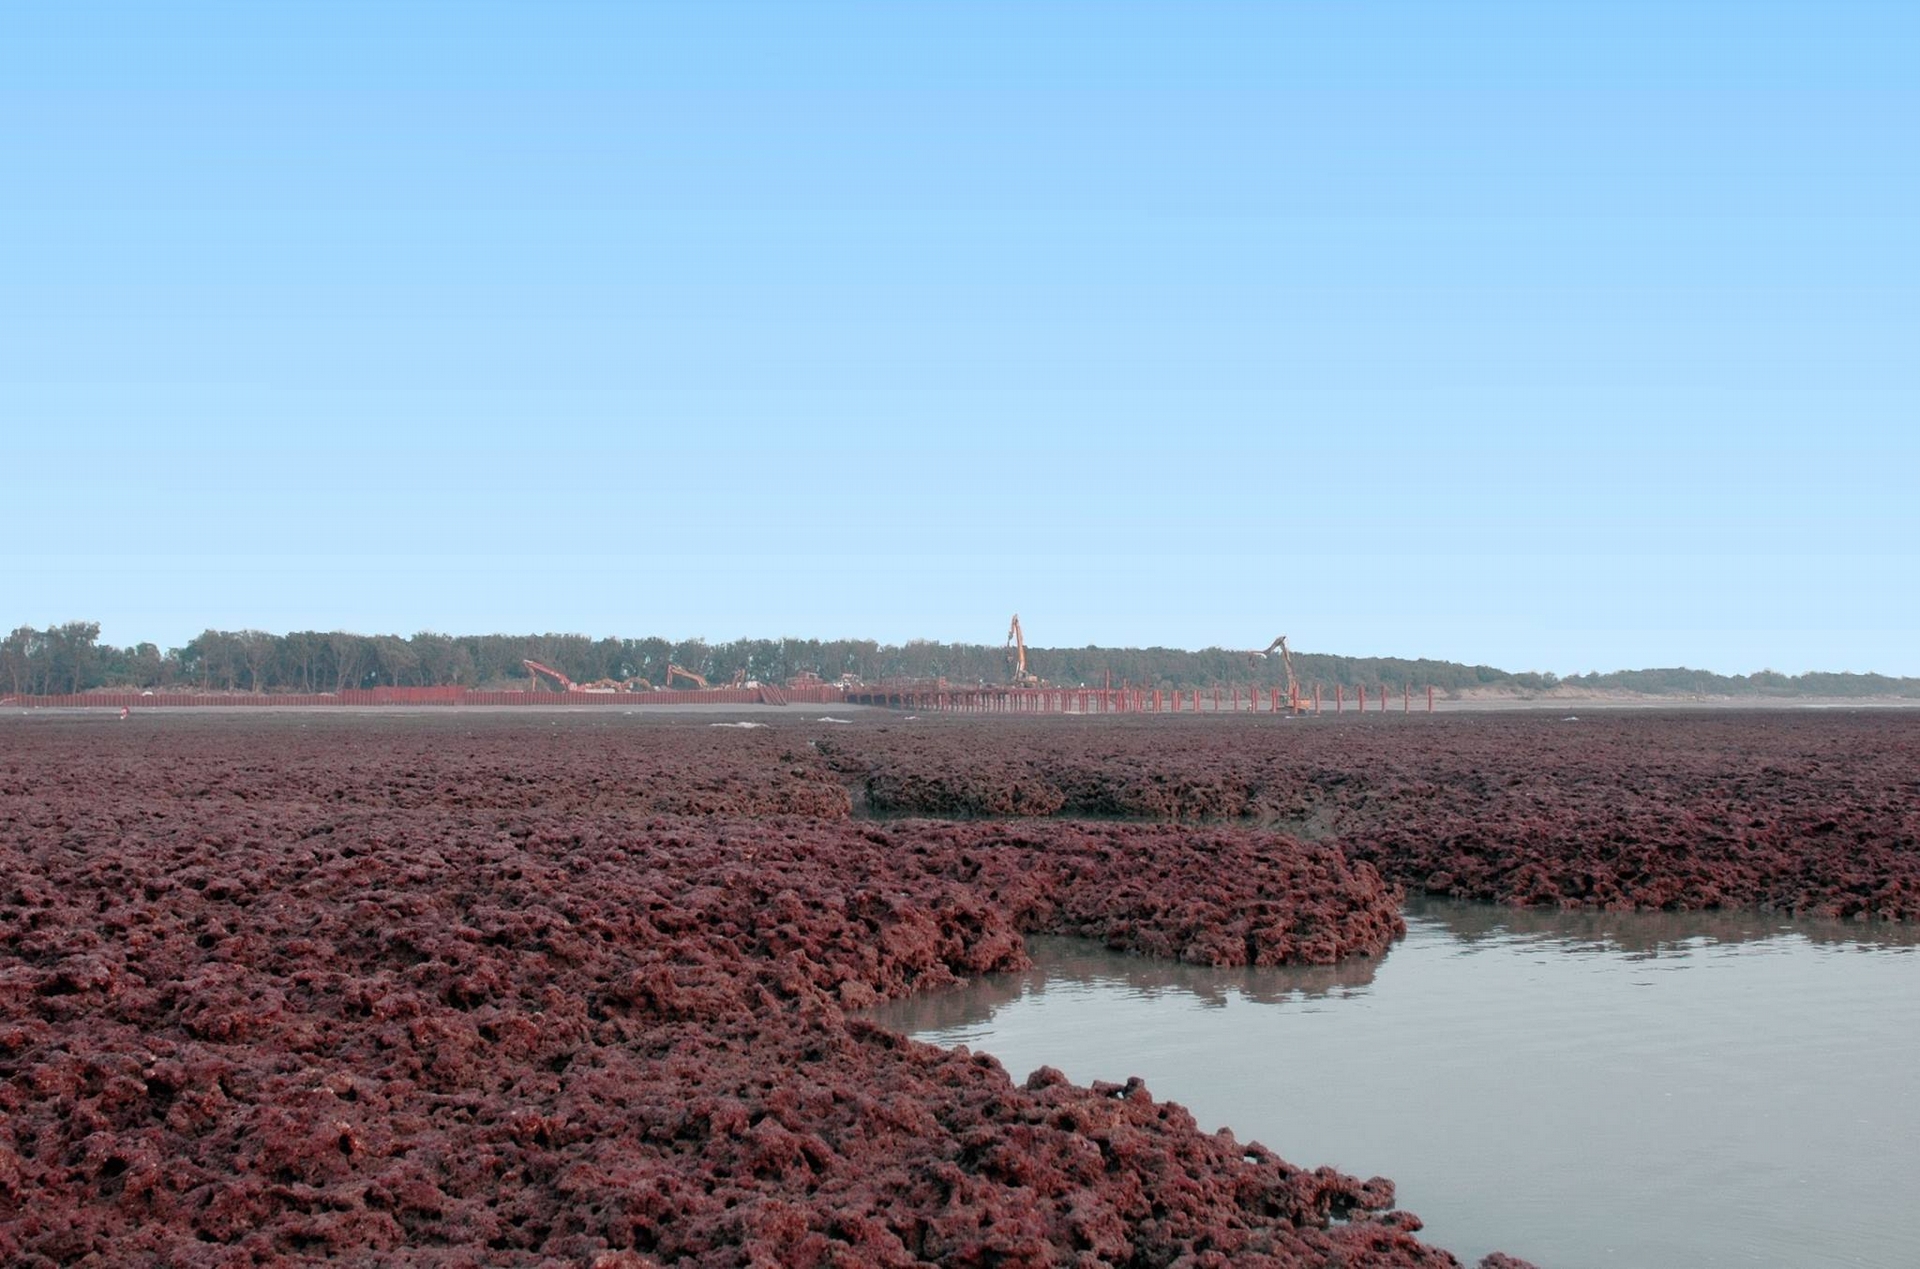 每年3至4月是殼狀珊瑚藻生長最旺盛的時候，那時原本烏黑的礁岩就會轉為紅通通一片。照片後方可見到觀新藻礁2007年的開發工程。Photograph courtesy of Mission Blue